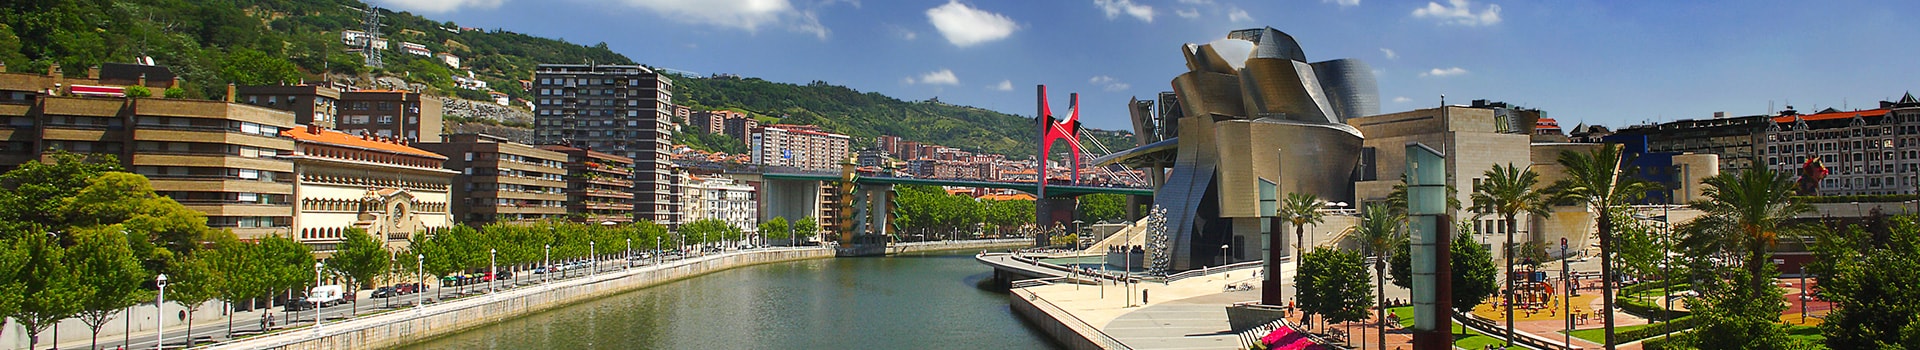 Gran Canaria - Bilbao